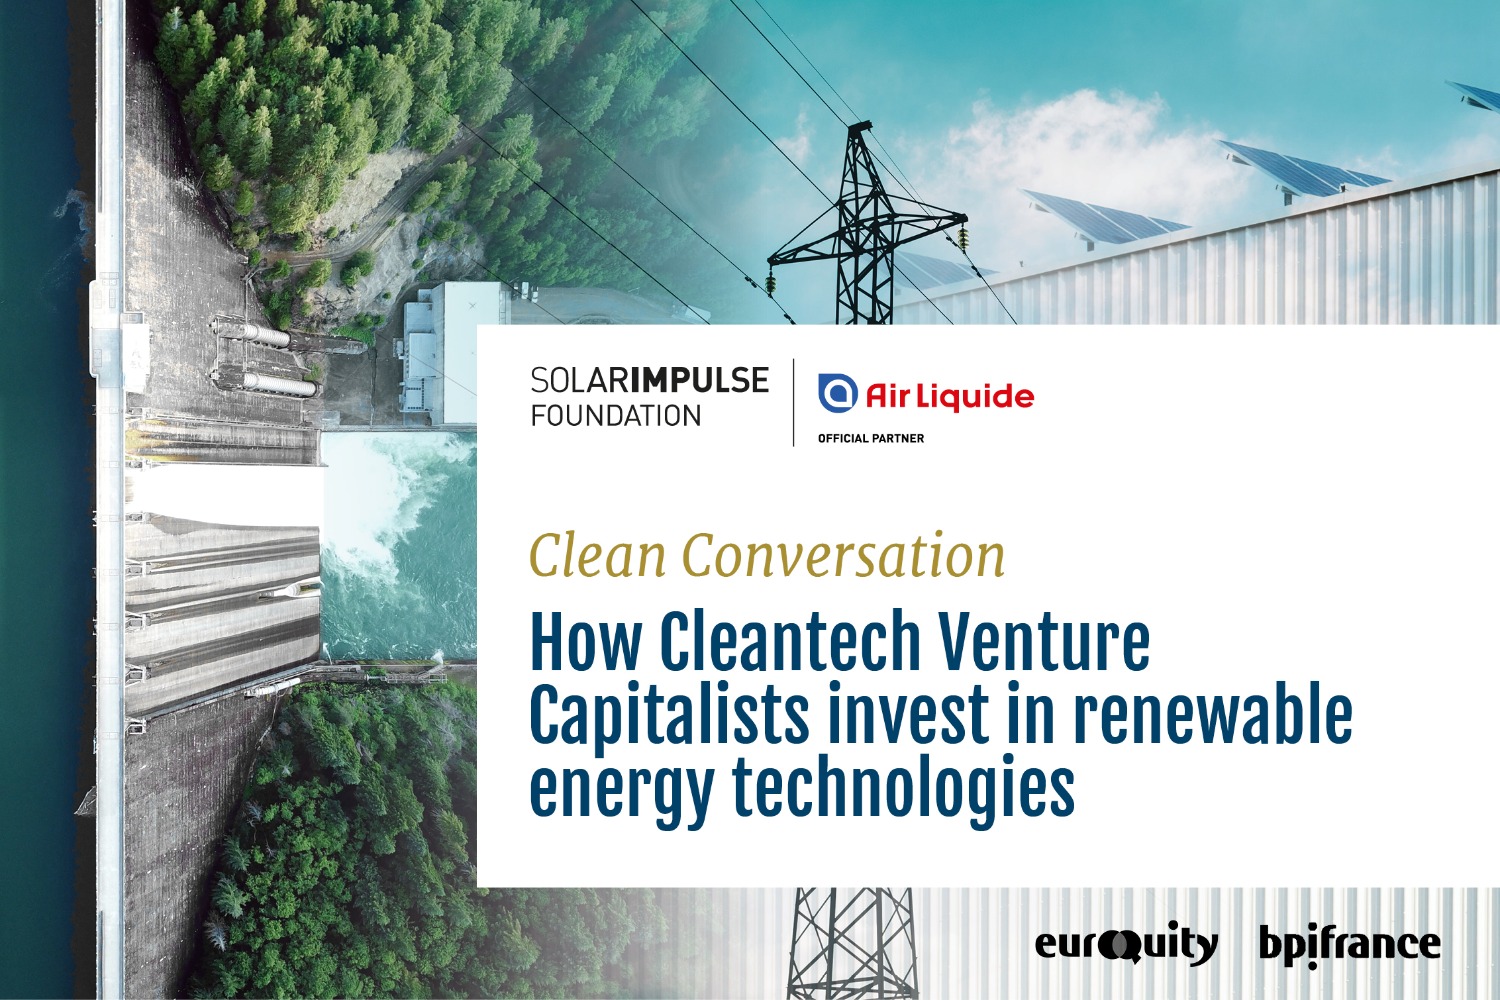 Conversazione pulita alimentata da Air Liquide: Come i Venture Capitalist Cleantech investono nelle tecnologie per le energie rinnovabili?